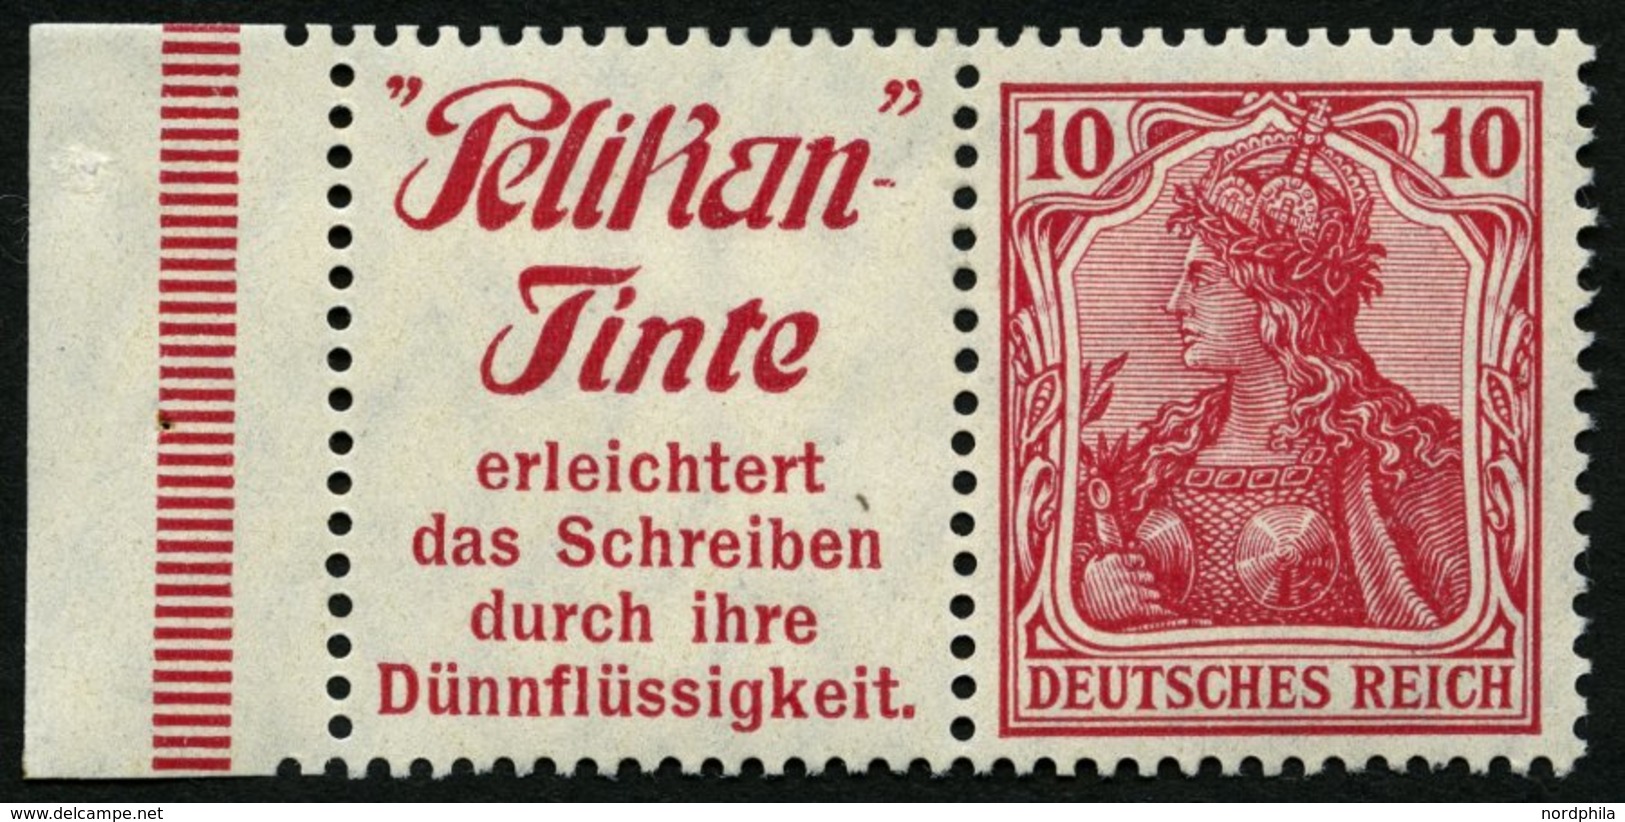 ZUSAMMENDRUCKE W 3.27 *, 1911, Pelikan-Tinte + 10 Pf., Mit Rand, Fast Postfrisch, Pracht - Zusammendrucke